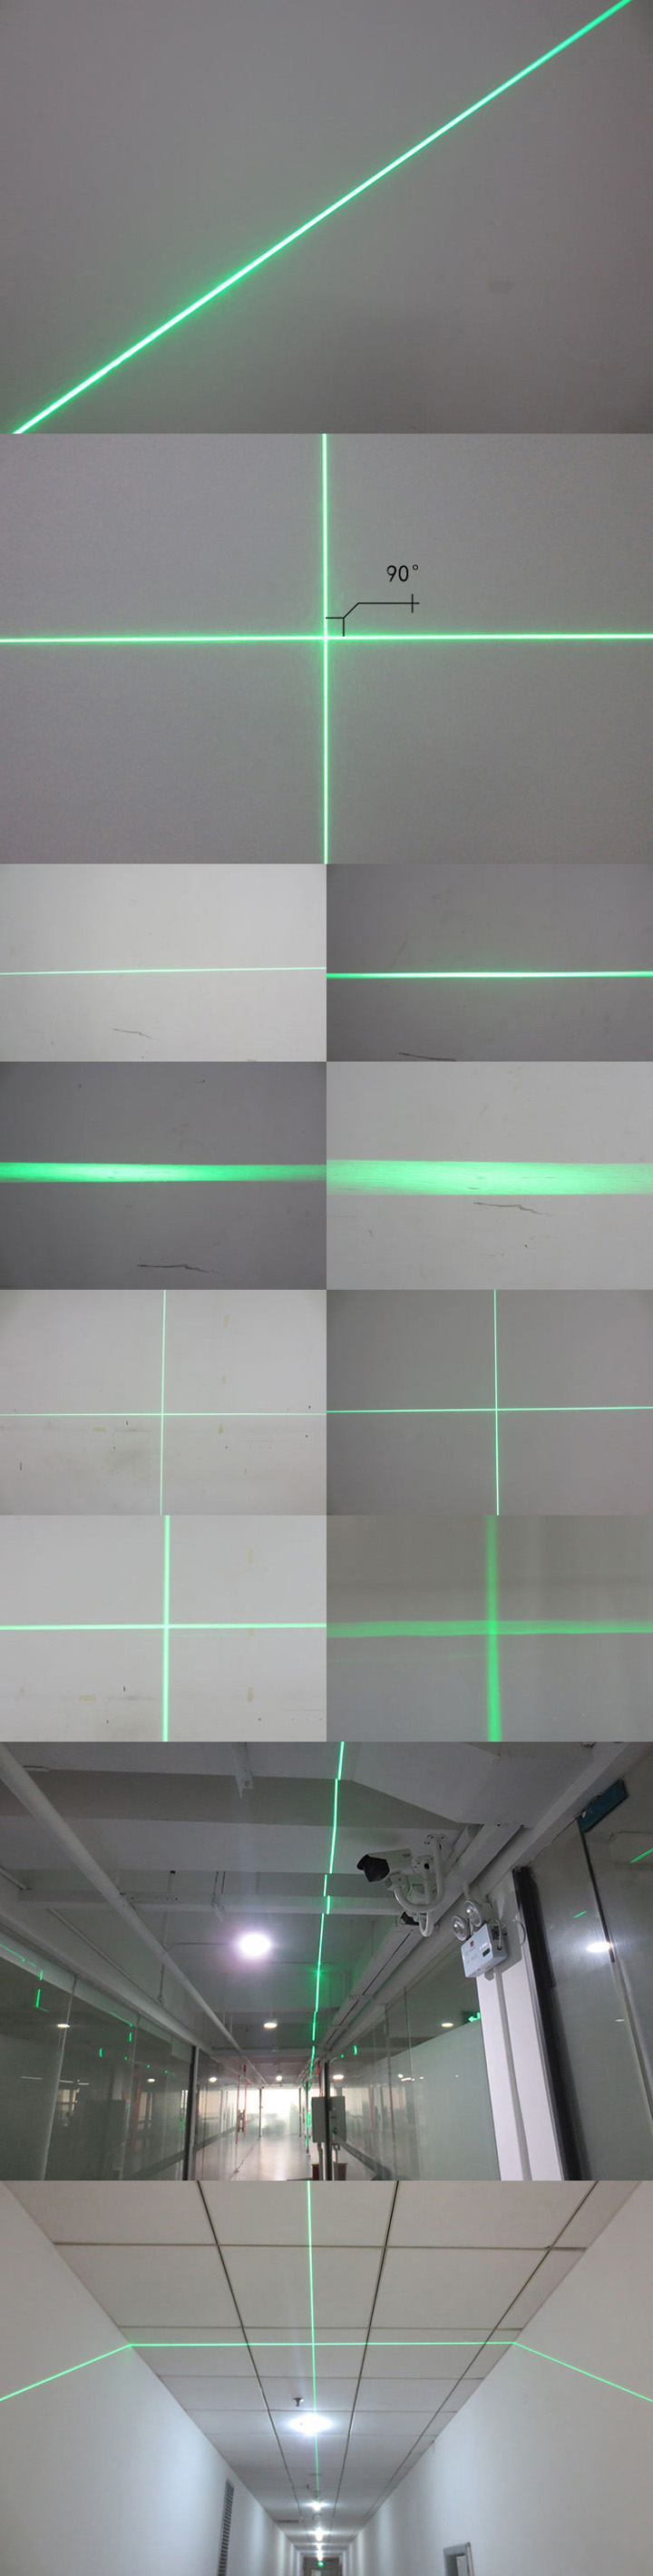 lijn/kruis groene lasermodule